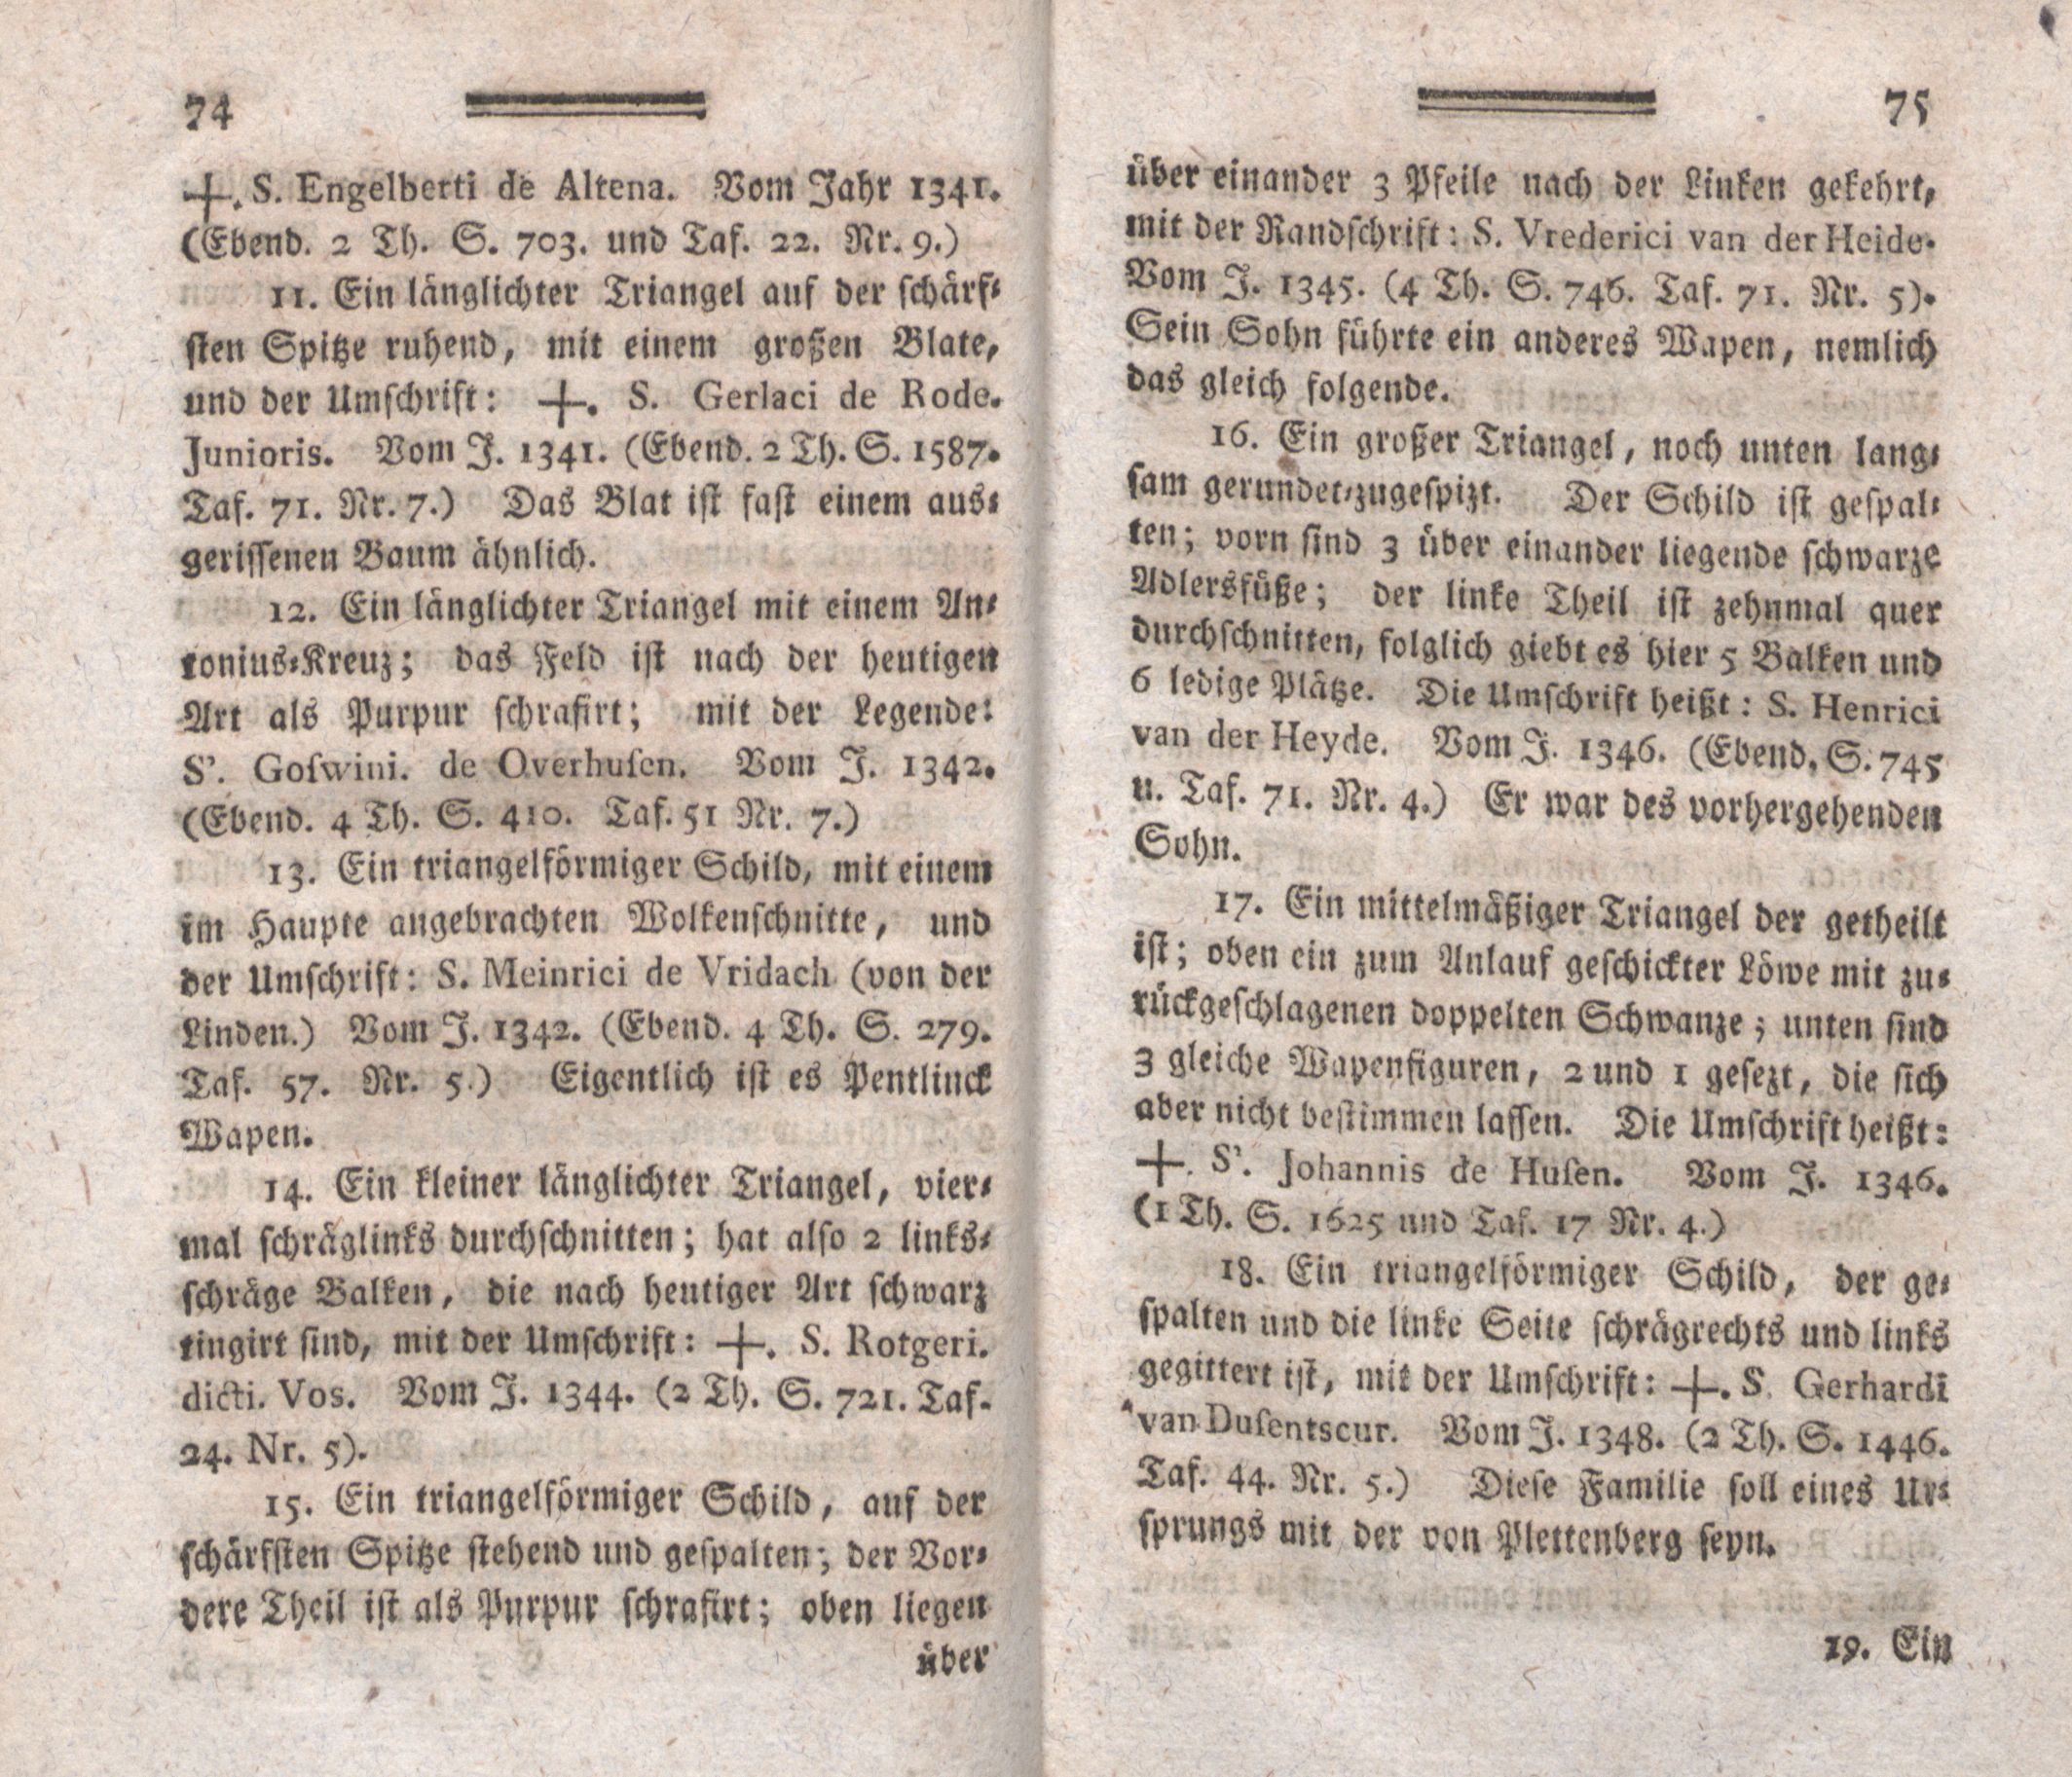 Beyträge zur Geschichte der lief-, ehst- und kurländischen altadelichen Geschlechter (1794) | 33. (74-75) Main body of text